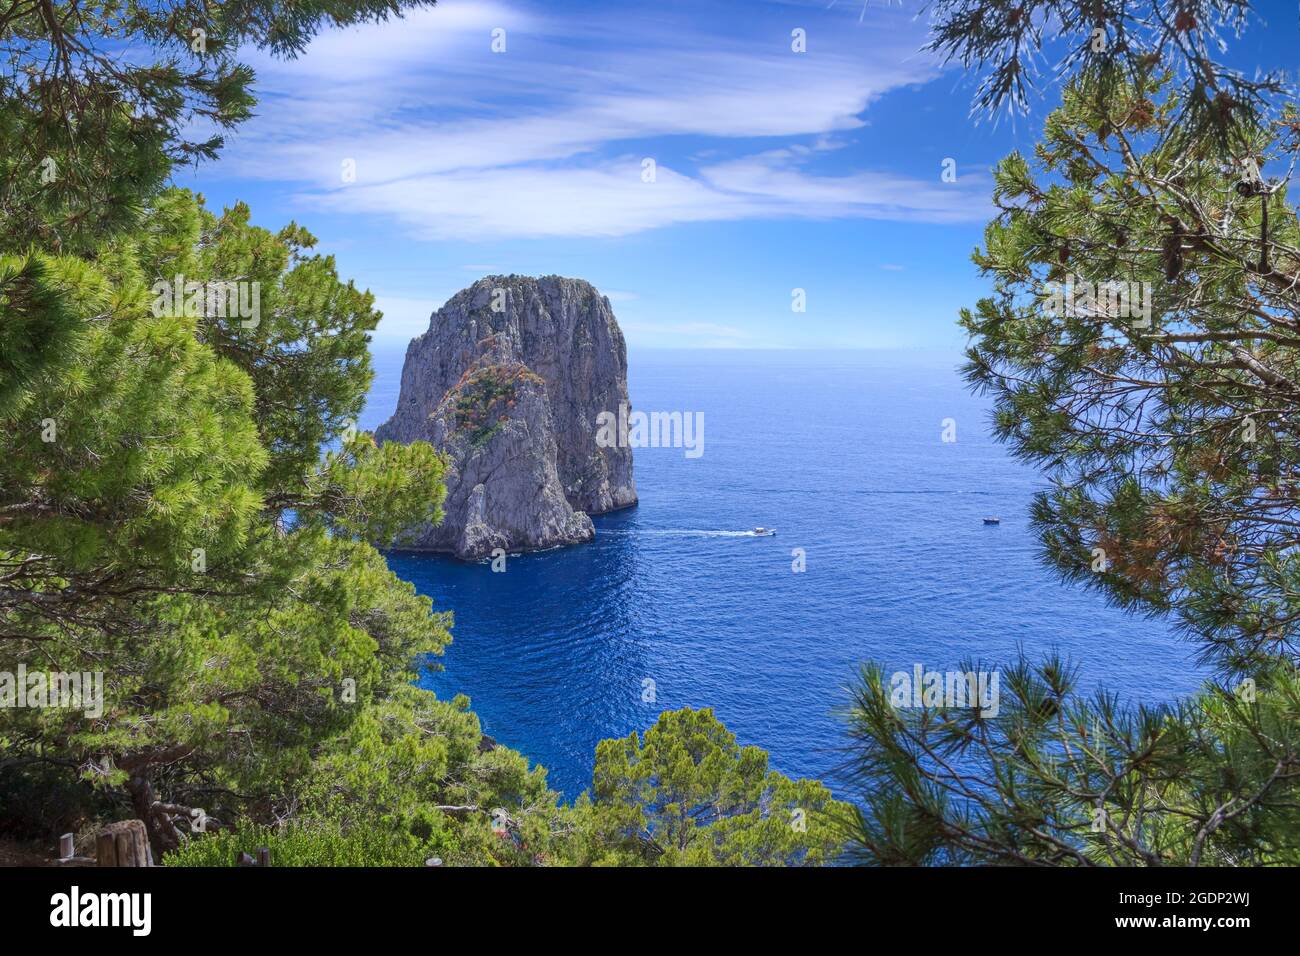 Vista panoramica delle famose rocce di Faraglioni (cataste di mare), l'attrazione turistica più visitata dell'isola di Capri, Italia. Foto Stock